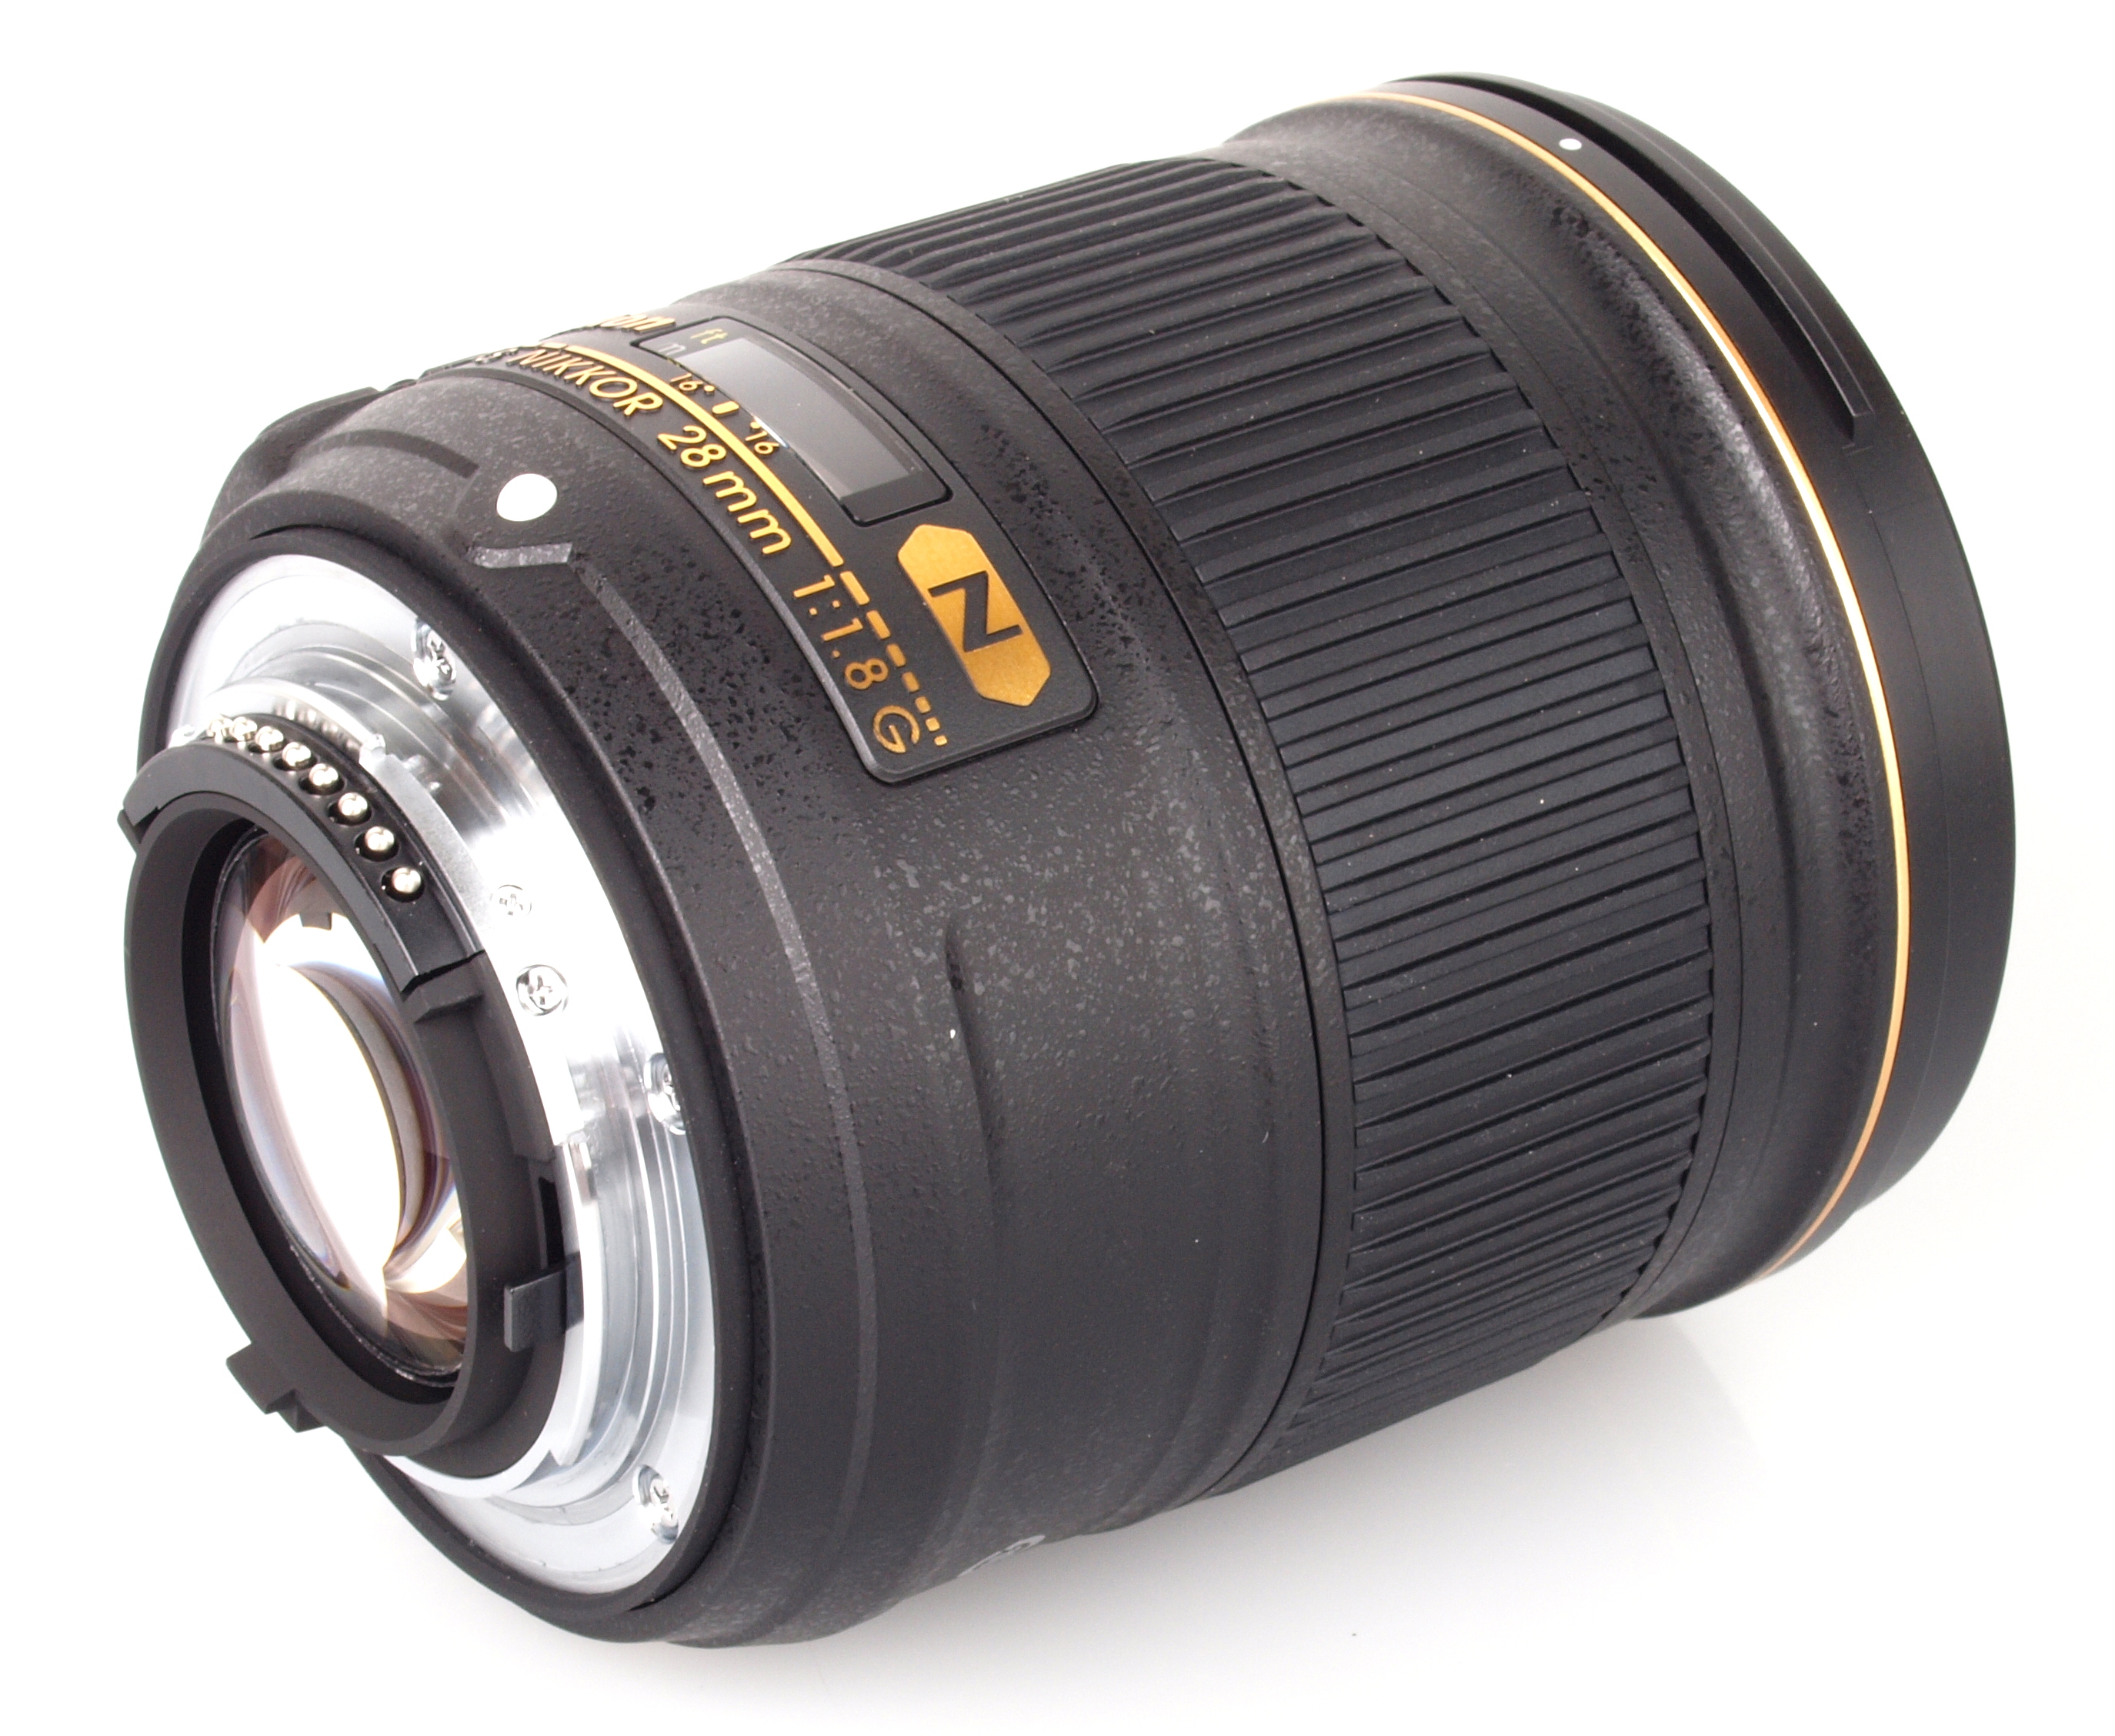 Nikon AF-S Nikkor 28mm f/1.8G Lens Review